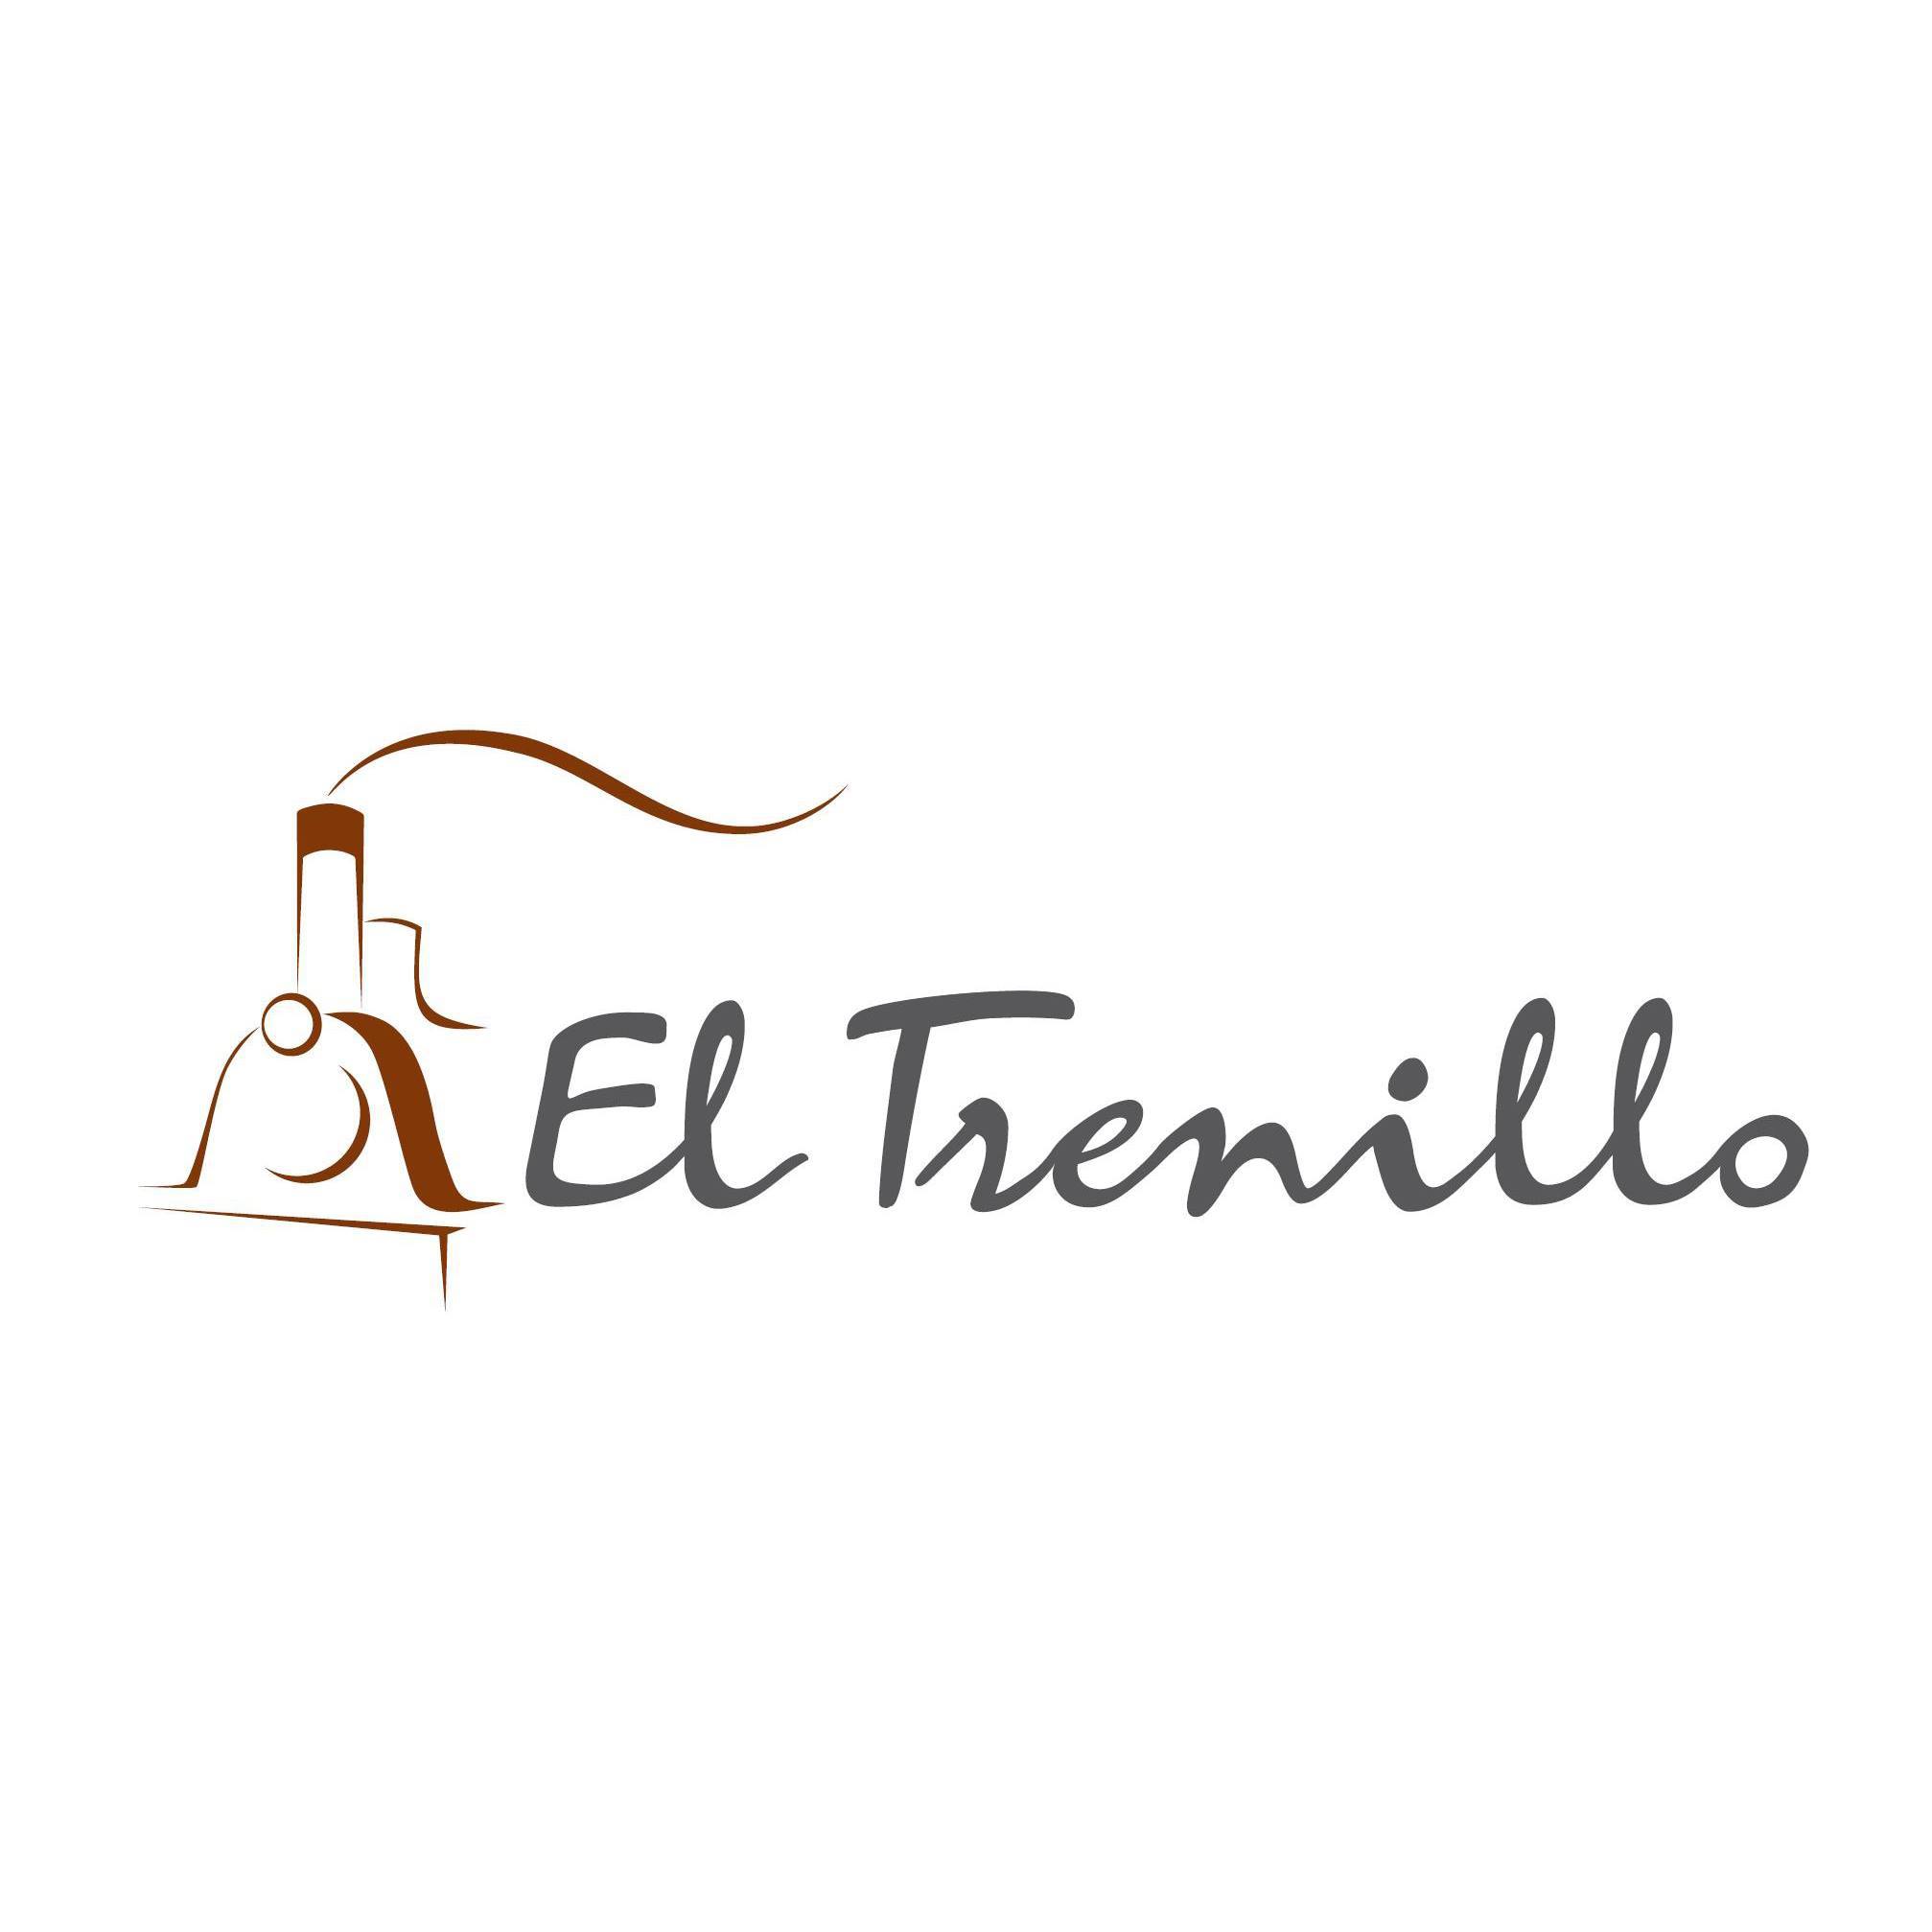 eltrenillo-logo